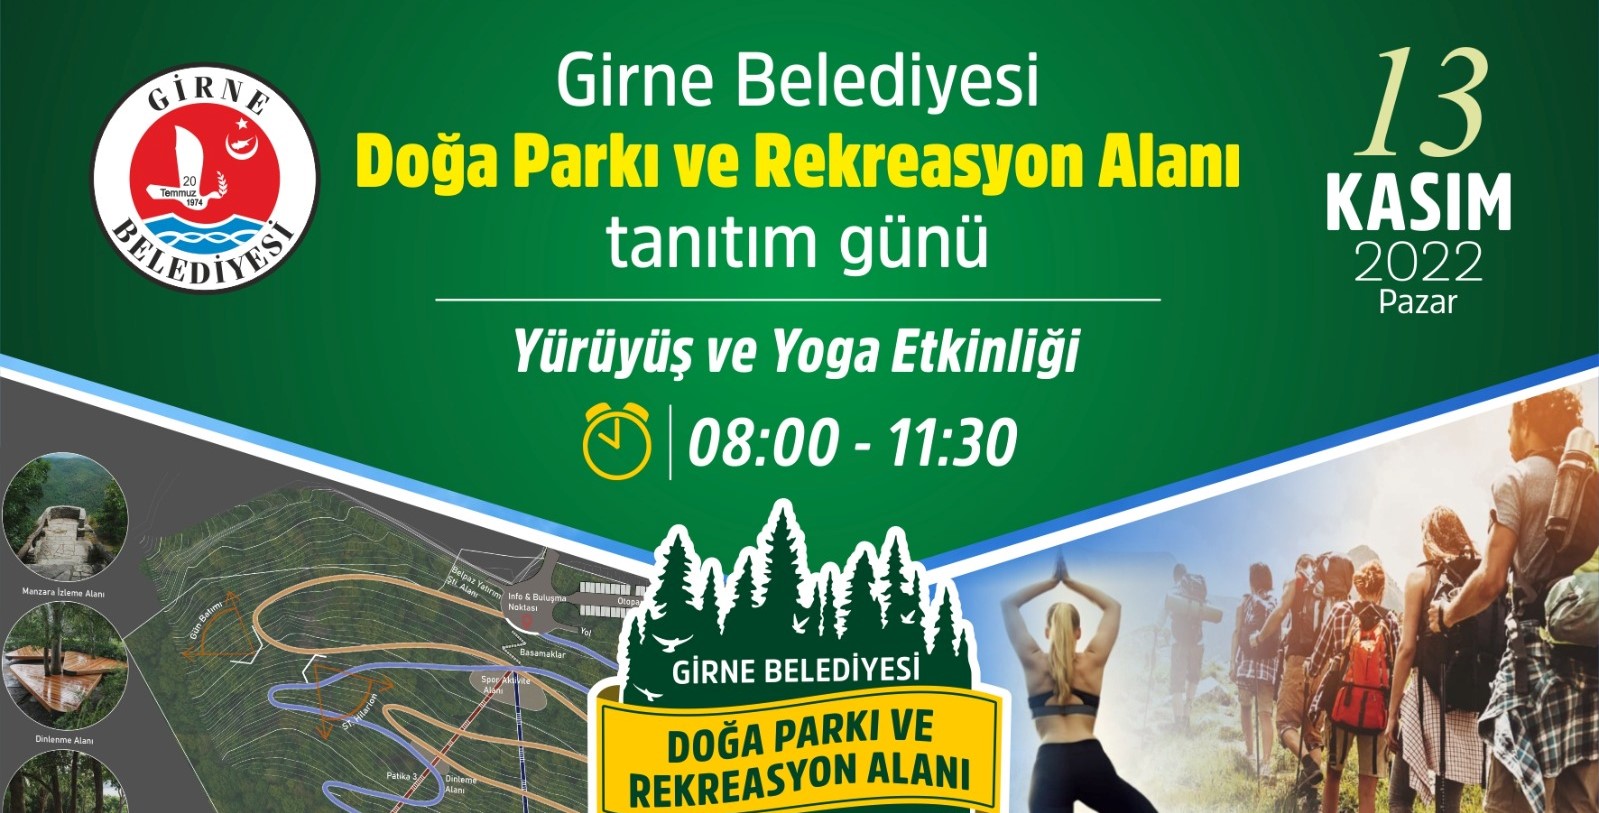 Girne Belediyesi Doğa Parkı Ve Rekreasyon Alanı Parkur Tanıtım Etkinliği 13 Kasım Pazar Günü Yapılıyor